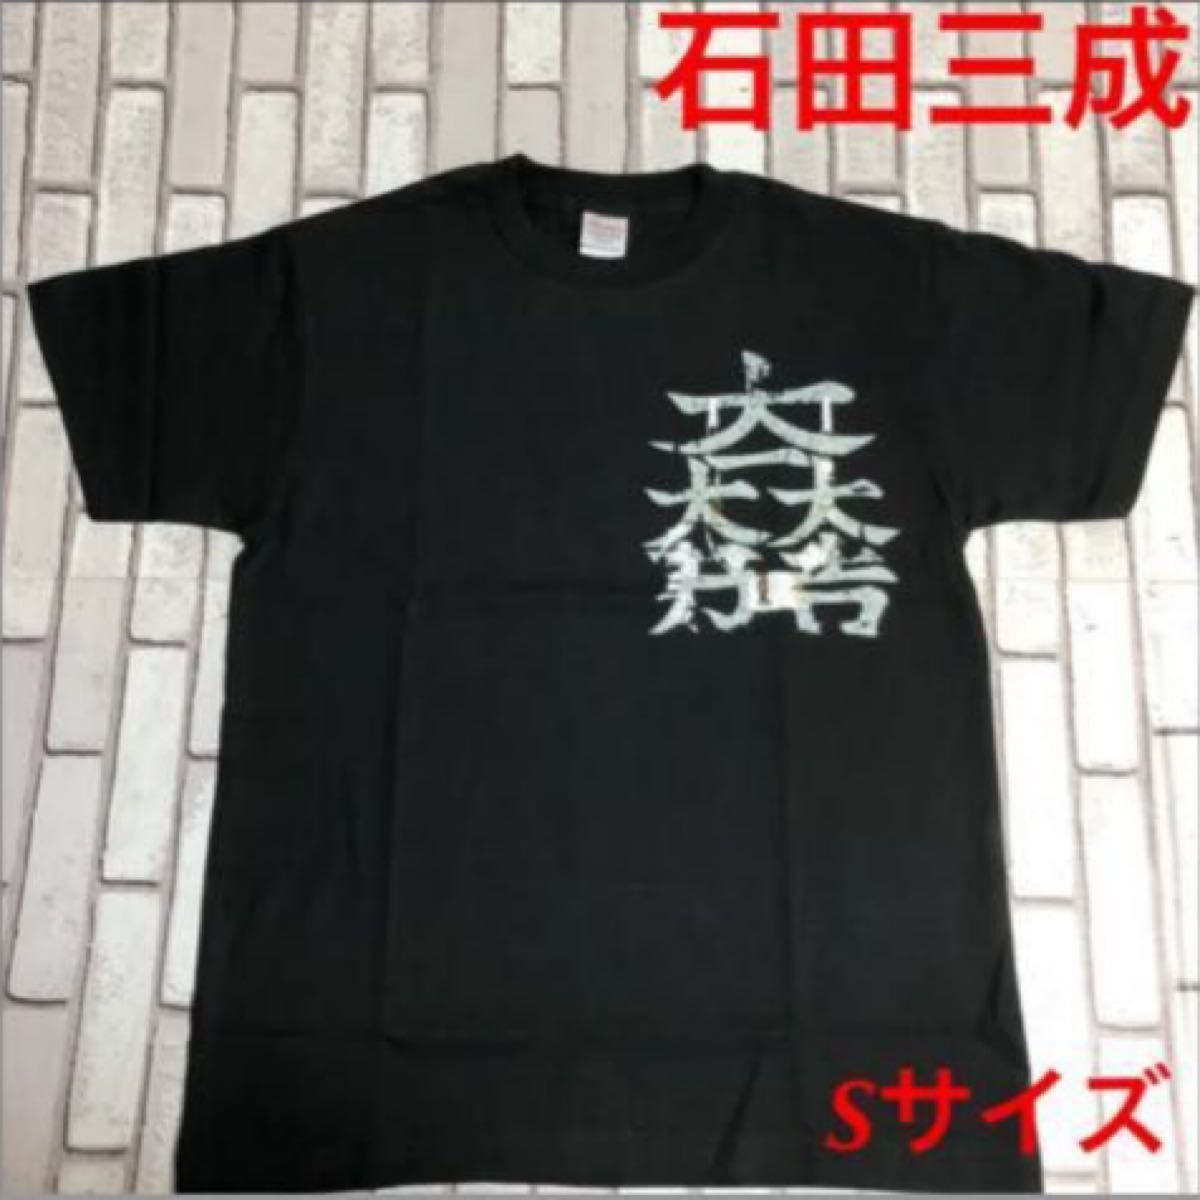 戦国武将 石田三成 オリジナル Tシャツ 家紋入り ブラック Sサイズ